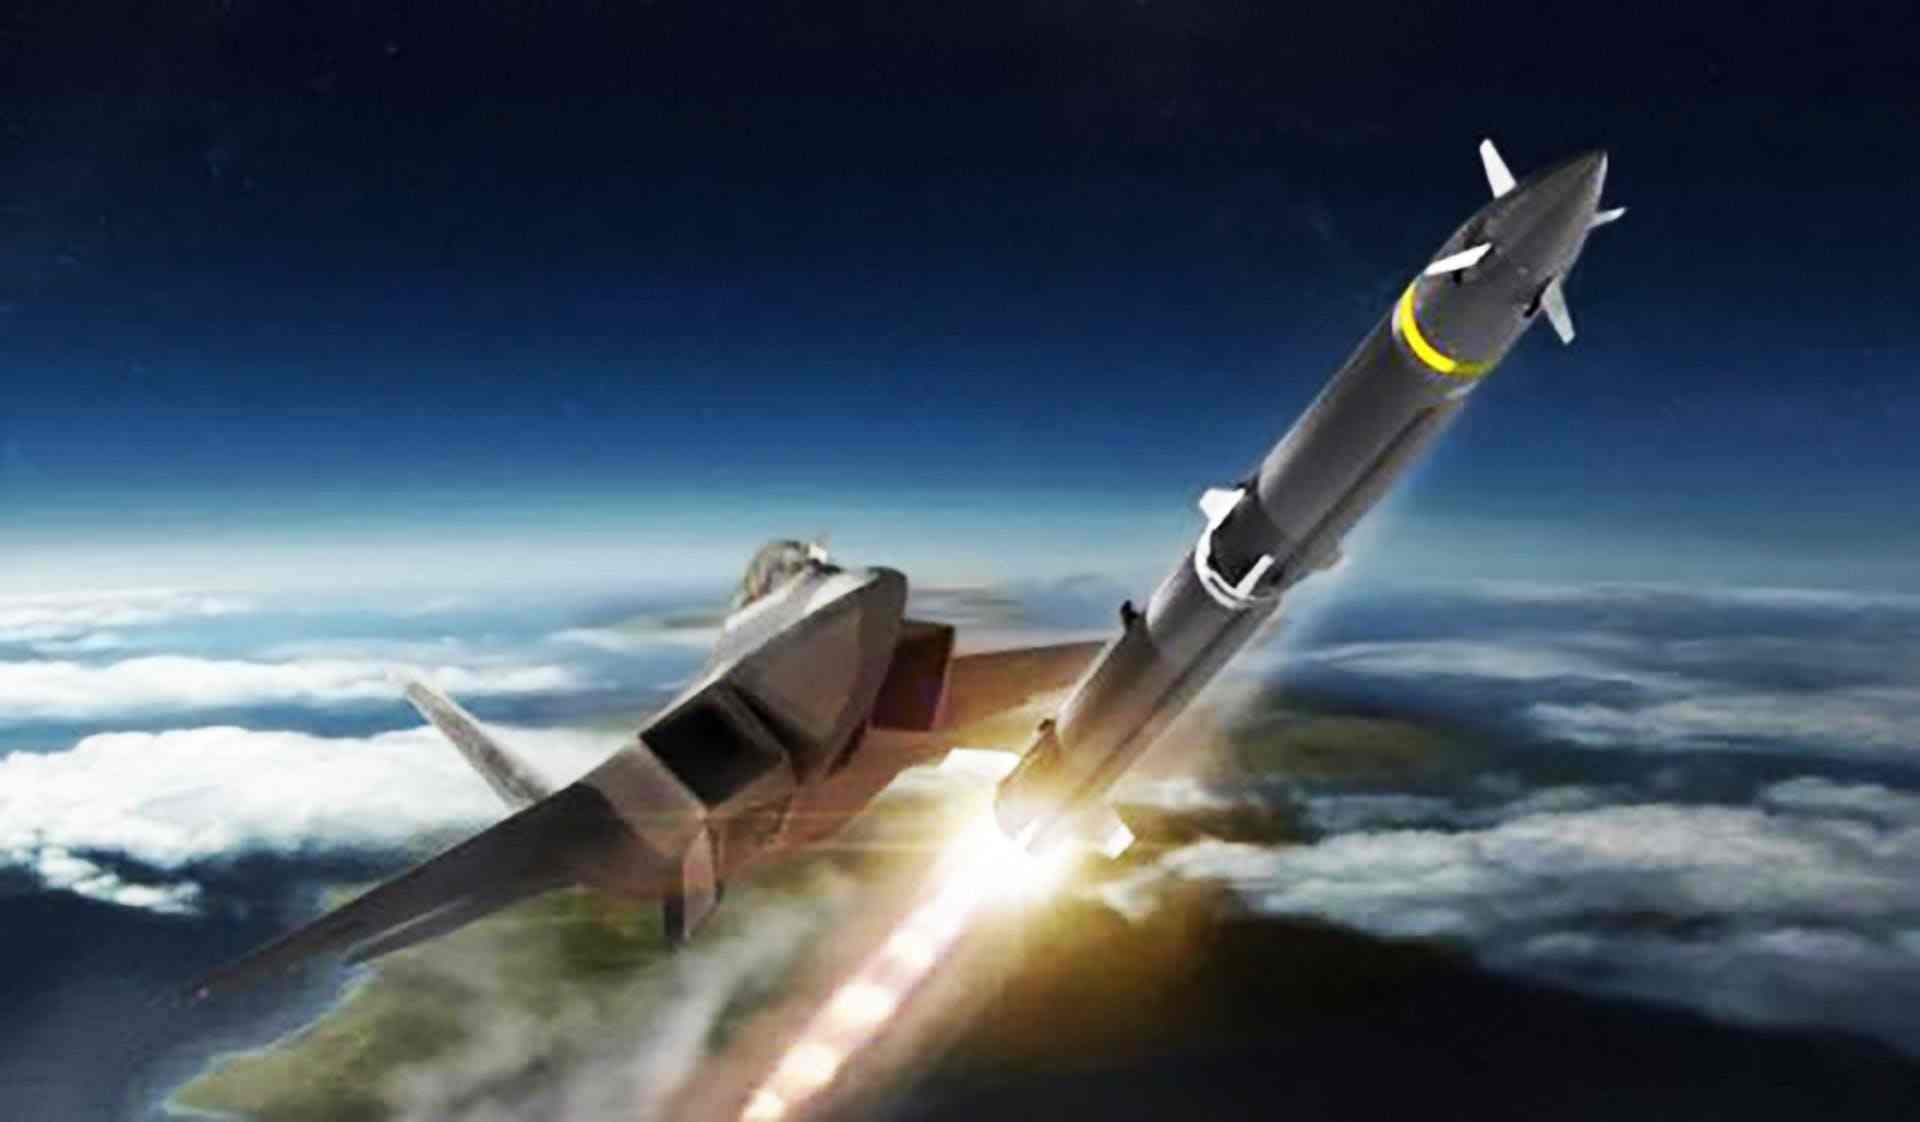 洛马高超声速吸气式武器概念样弹完成飞行试验 - (国内统一连续出版物号为 CN10-1570/V)